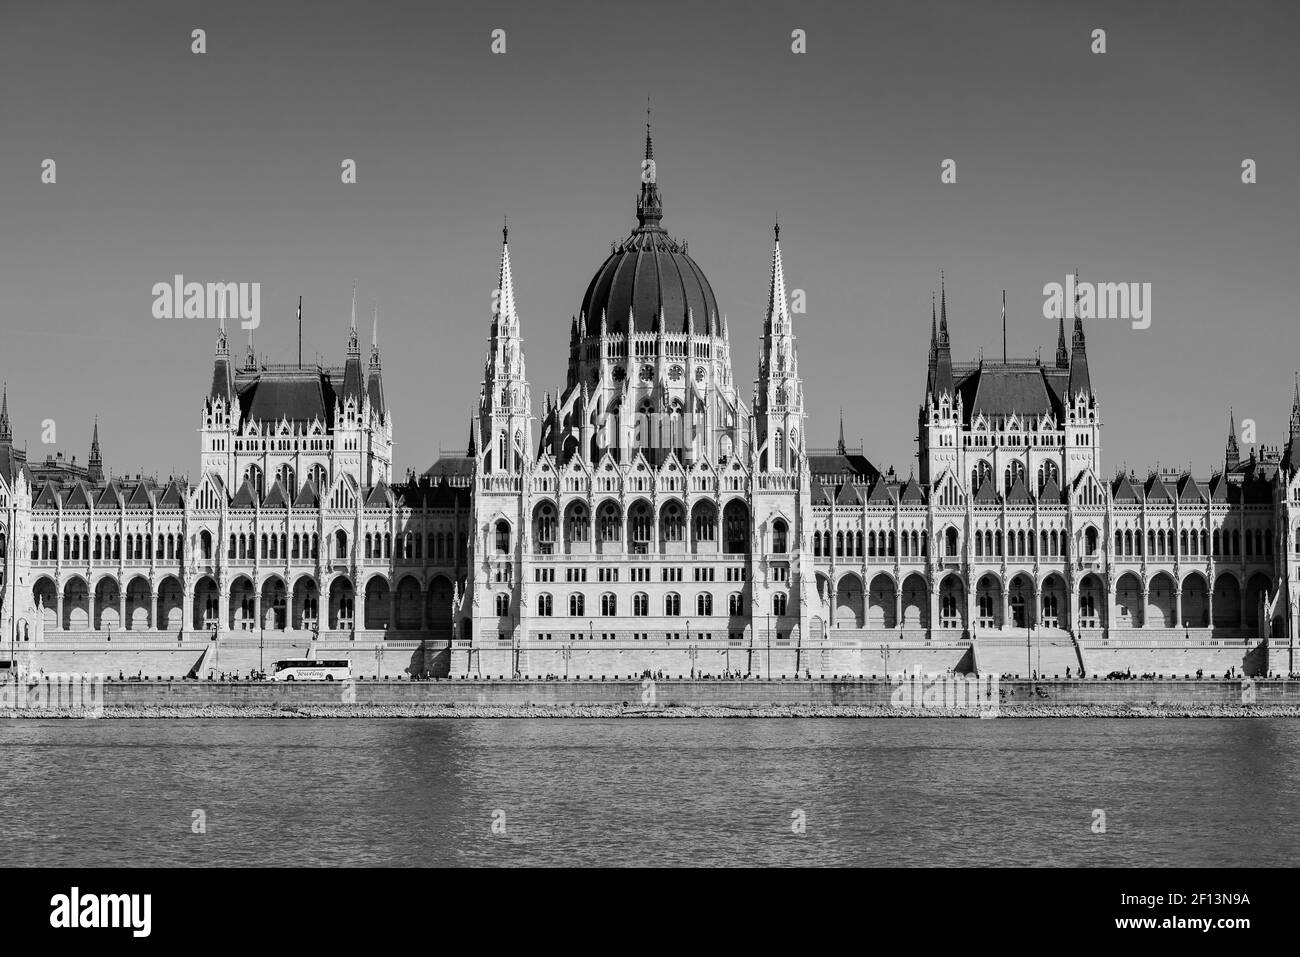 Parlamento ungherese edificio sulle rive del Danubio, Budapest, Ungheria (bianco e nero) Foto Stock